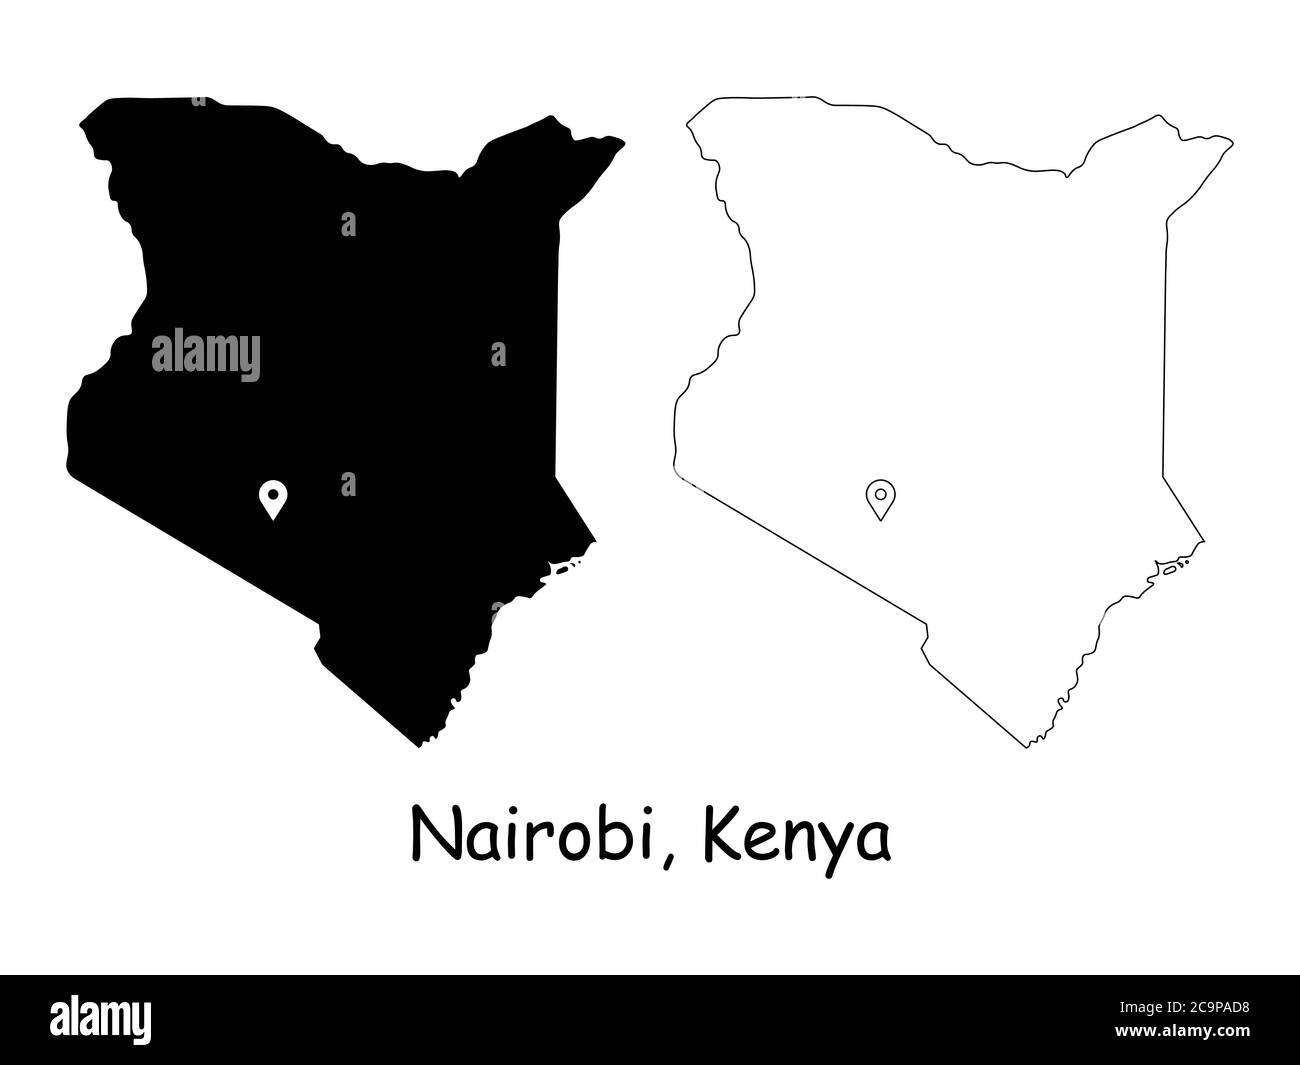 Nairobi Kenya. Mappa dettagliata del Paese con il pin della posizione sulla città capitale. Silhouette nera e mappe di contorno isolate su sfondo bianco. Vettore EPS Illustrazione Vettoriale